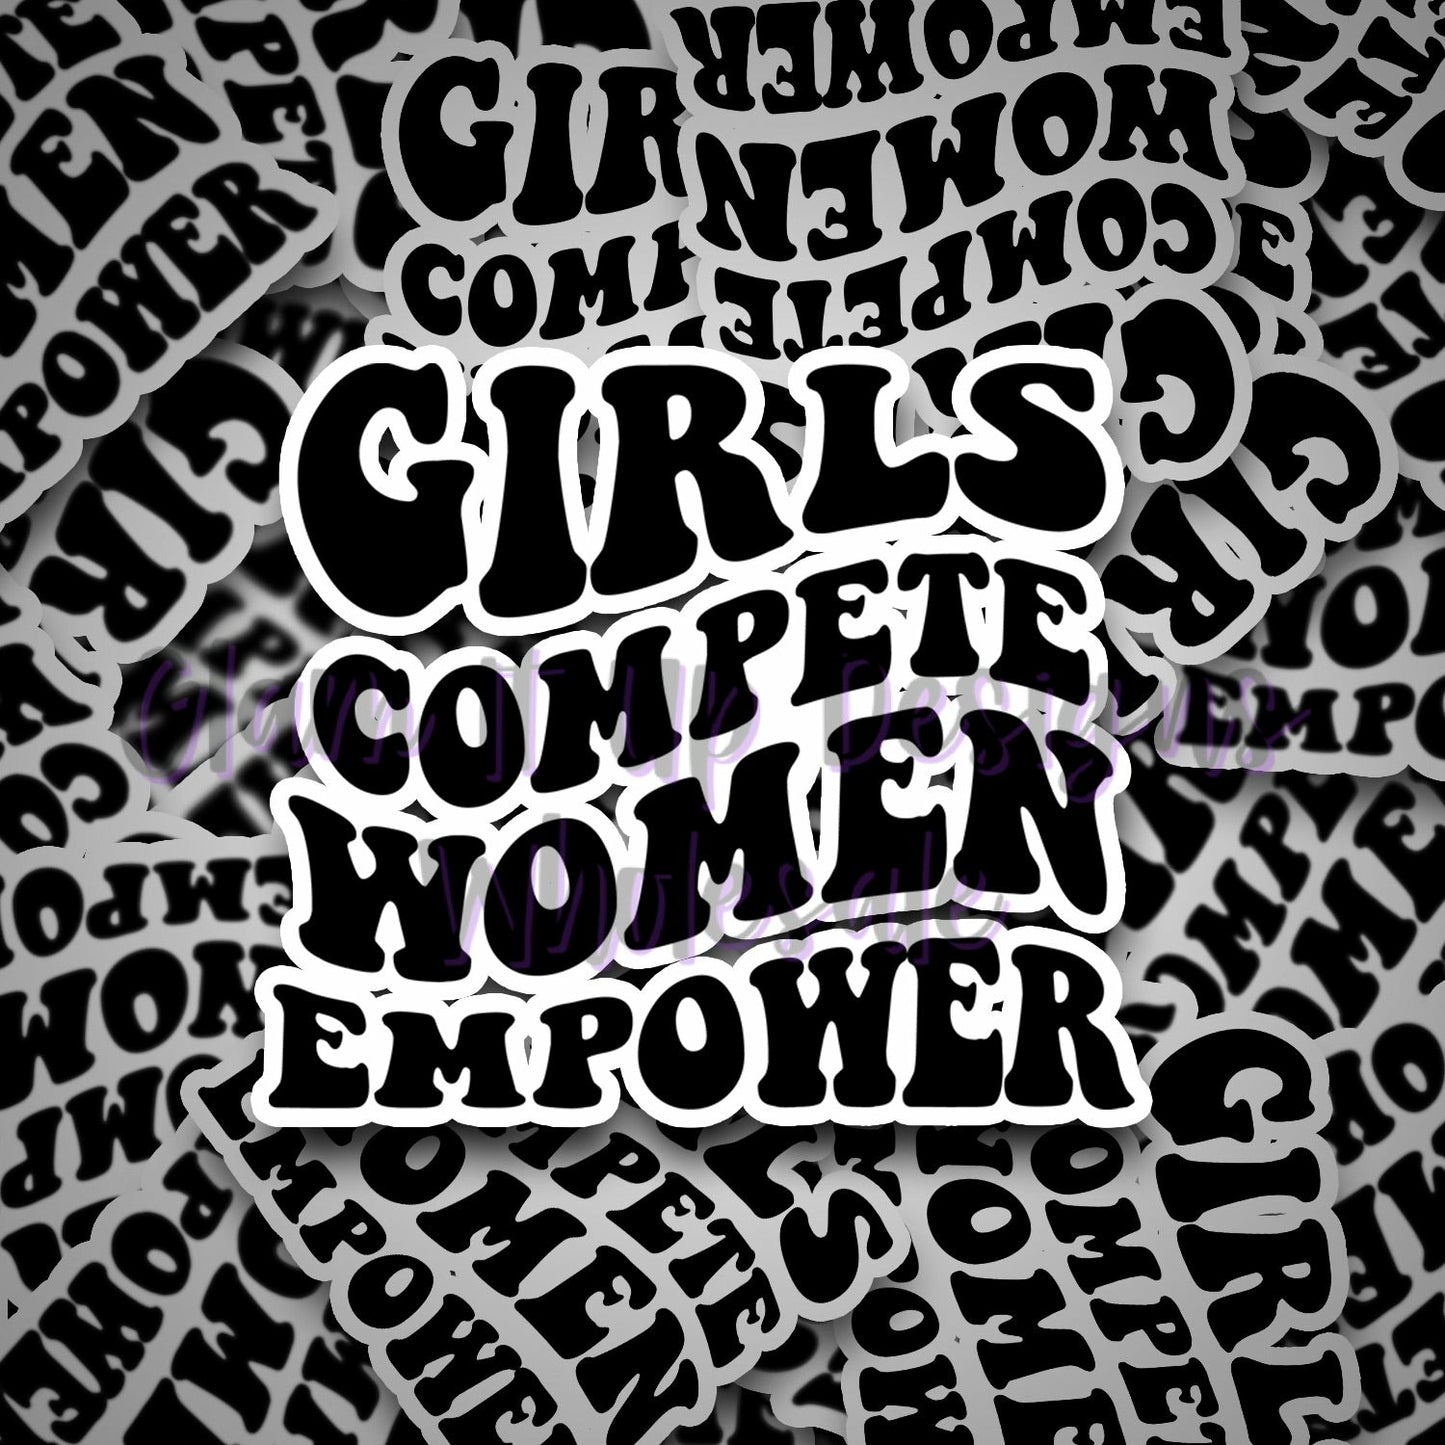 Girls Compete Women Empower Vinyl Sticker